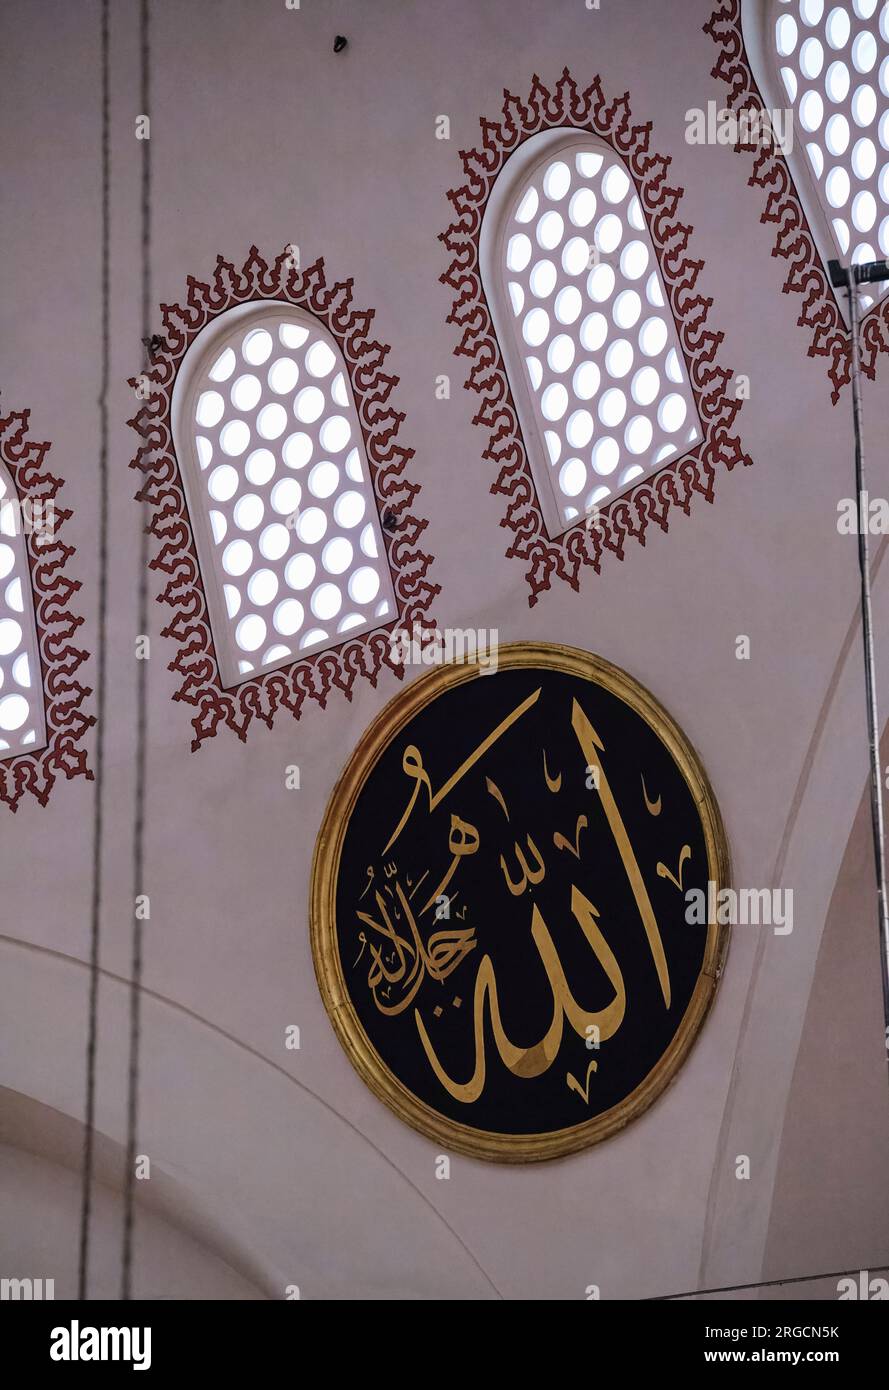 Istanbul, Turchia, Turkiye. Medaglione "Allah" sul muro della Moschea di Solimano la magnifica Moschea di Solimano. Foto Stock